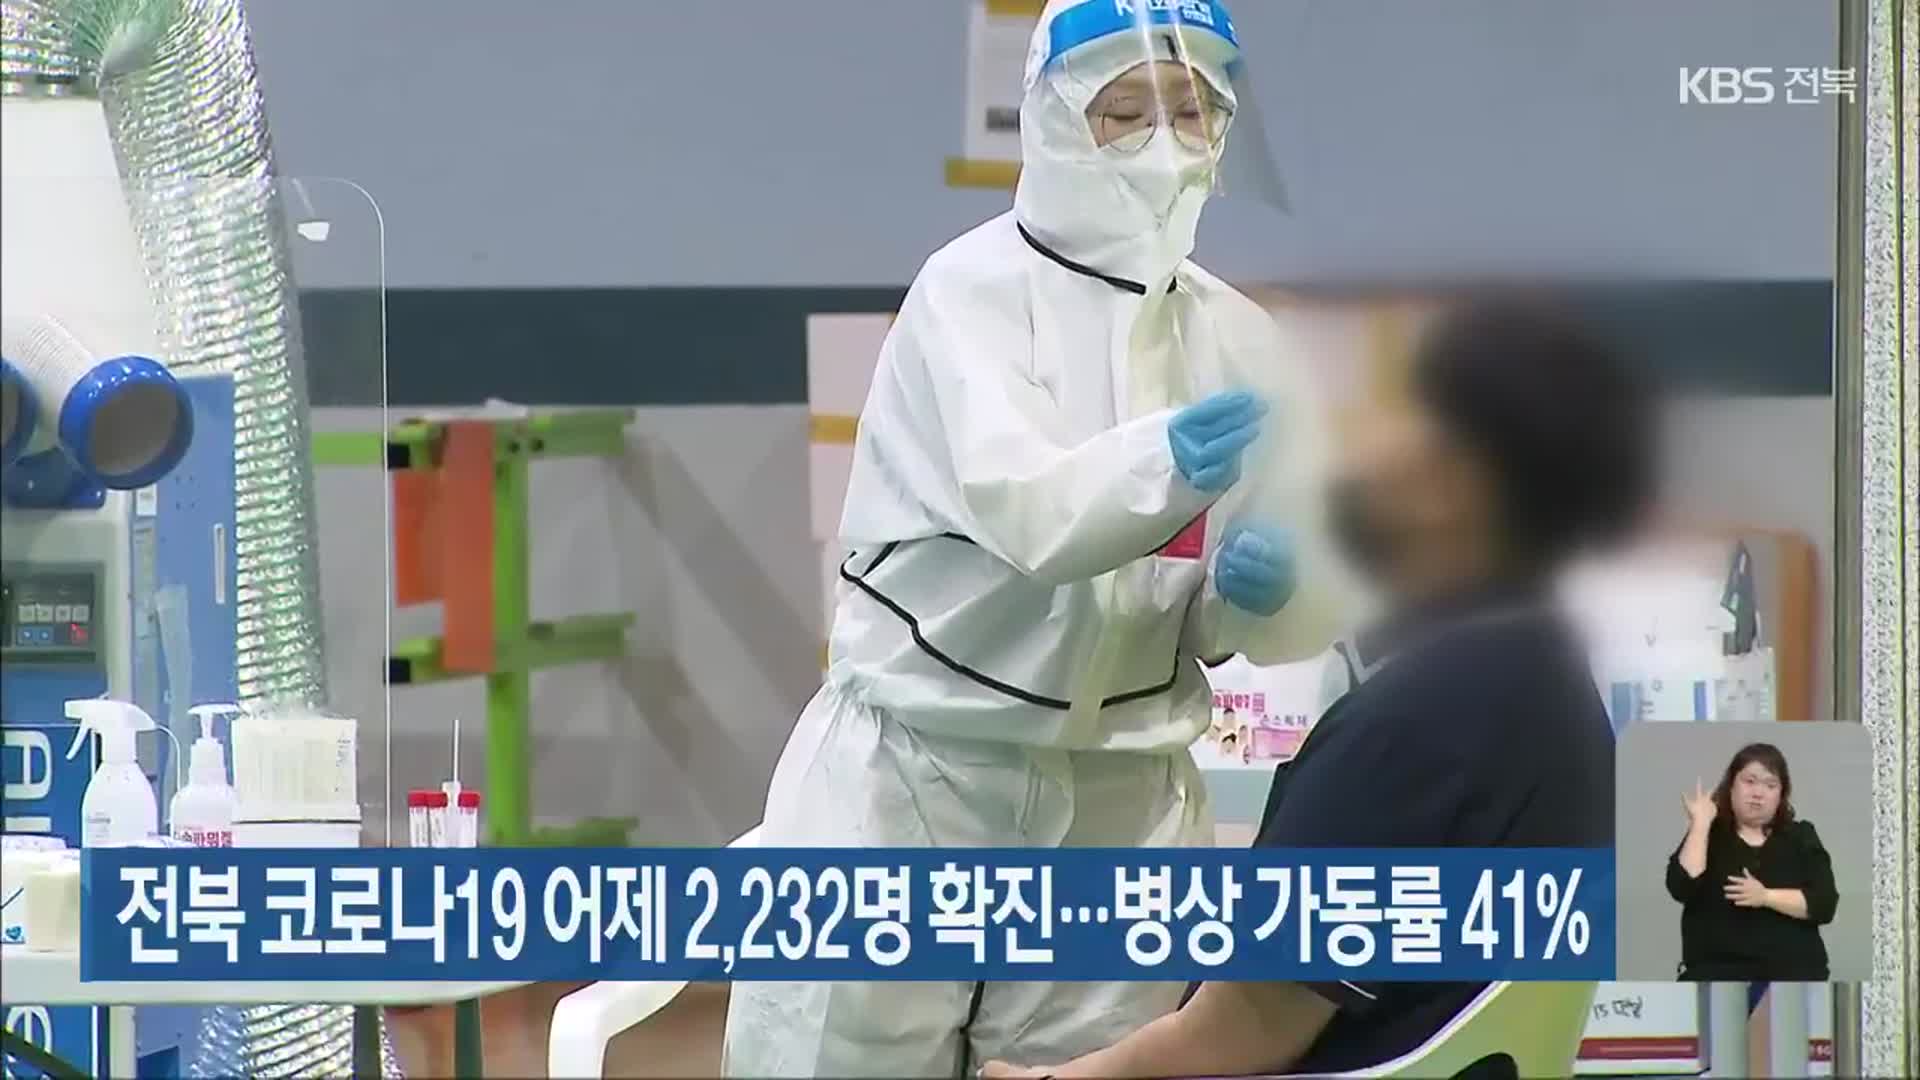 전북 코로나19 어제 2,232명 확진…병상 가동률 41%